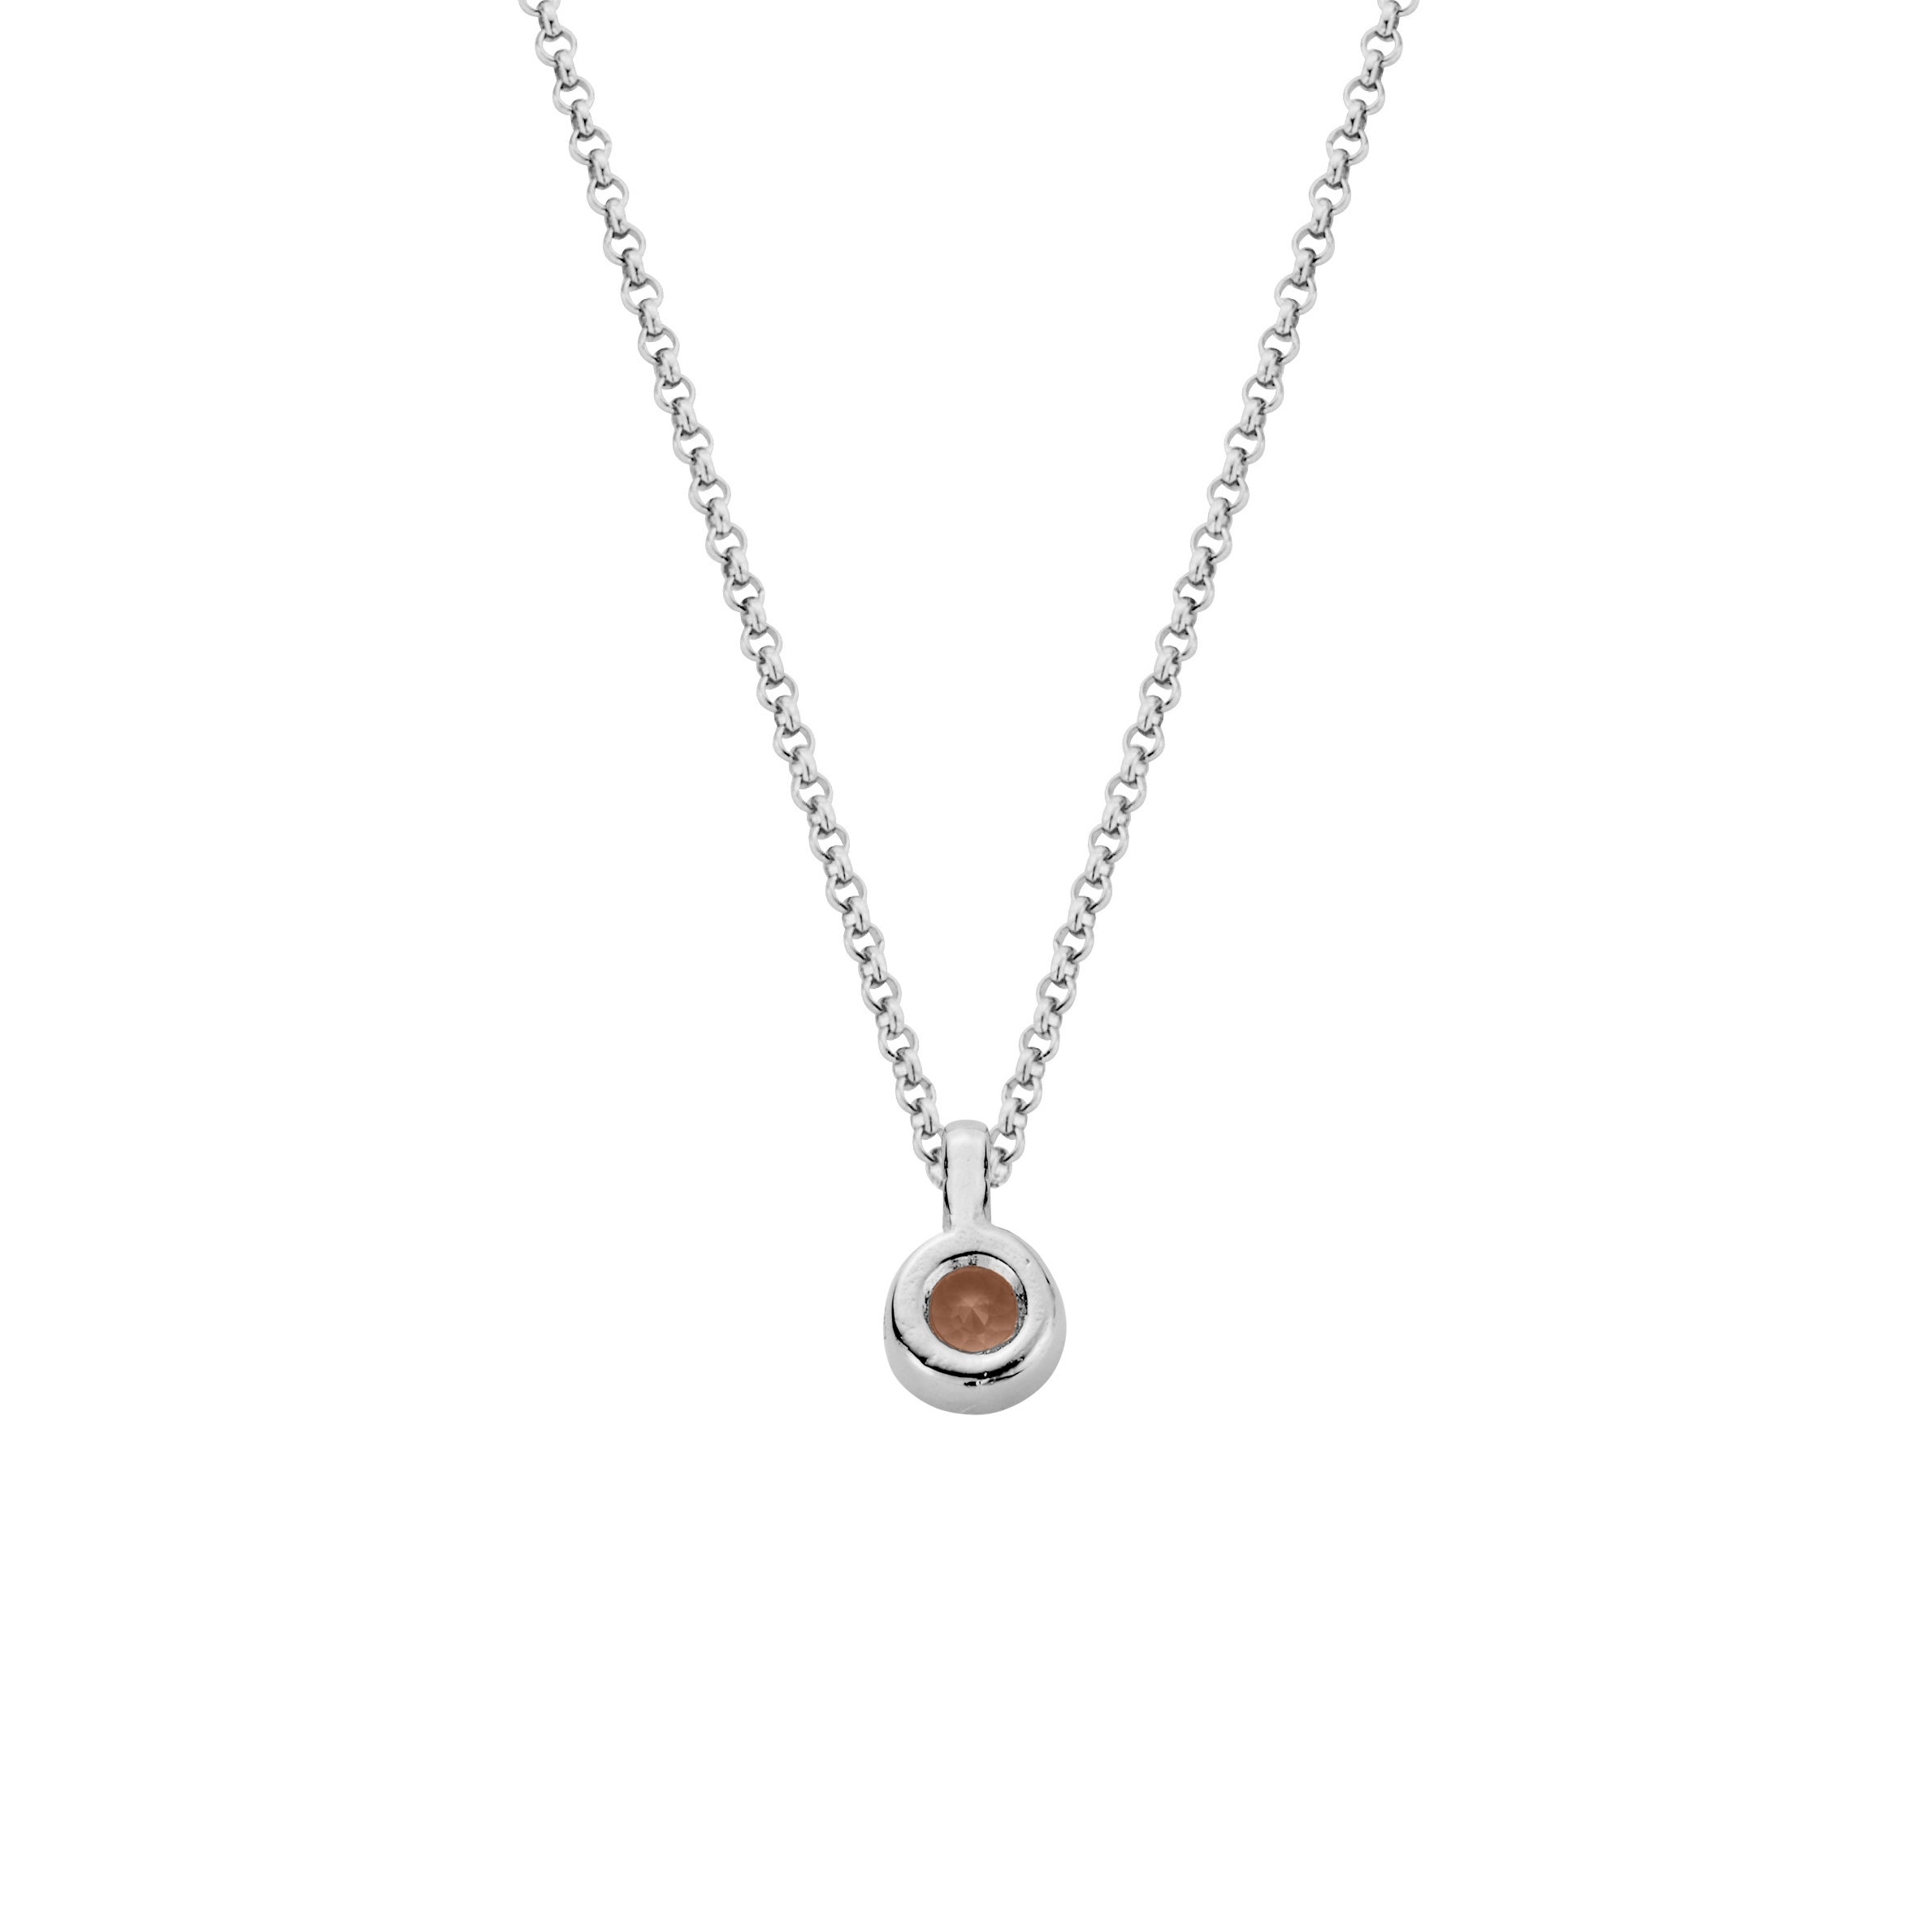 Silver Rose Quartz Baby Treasure Necklace